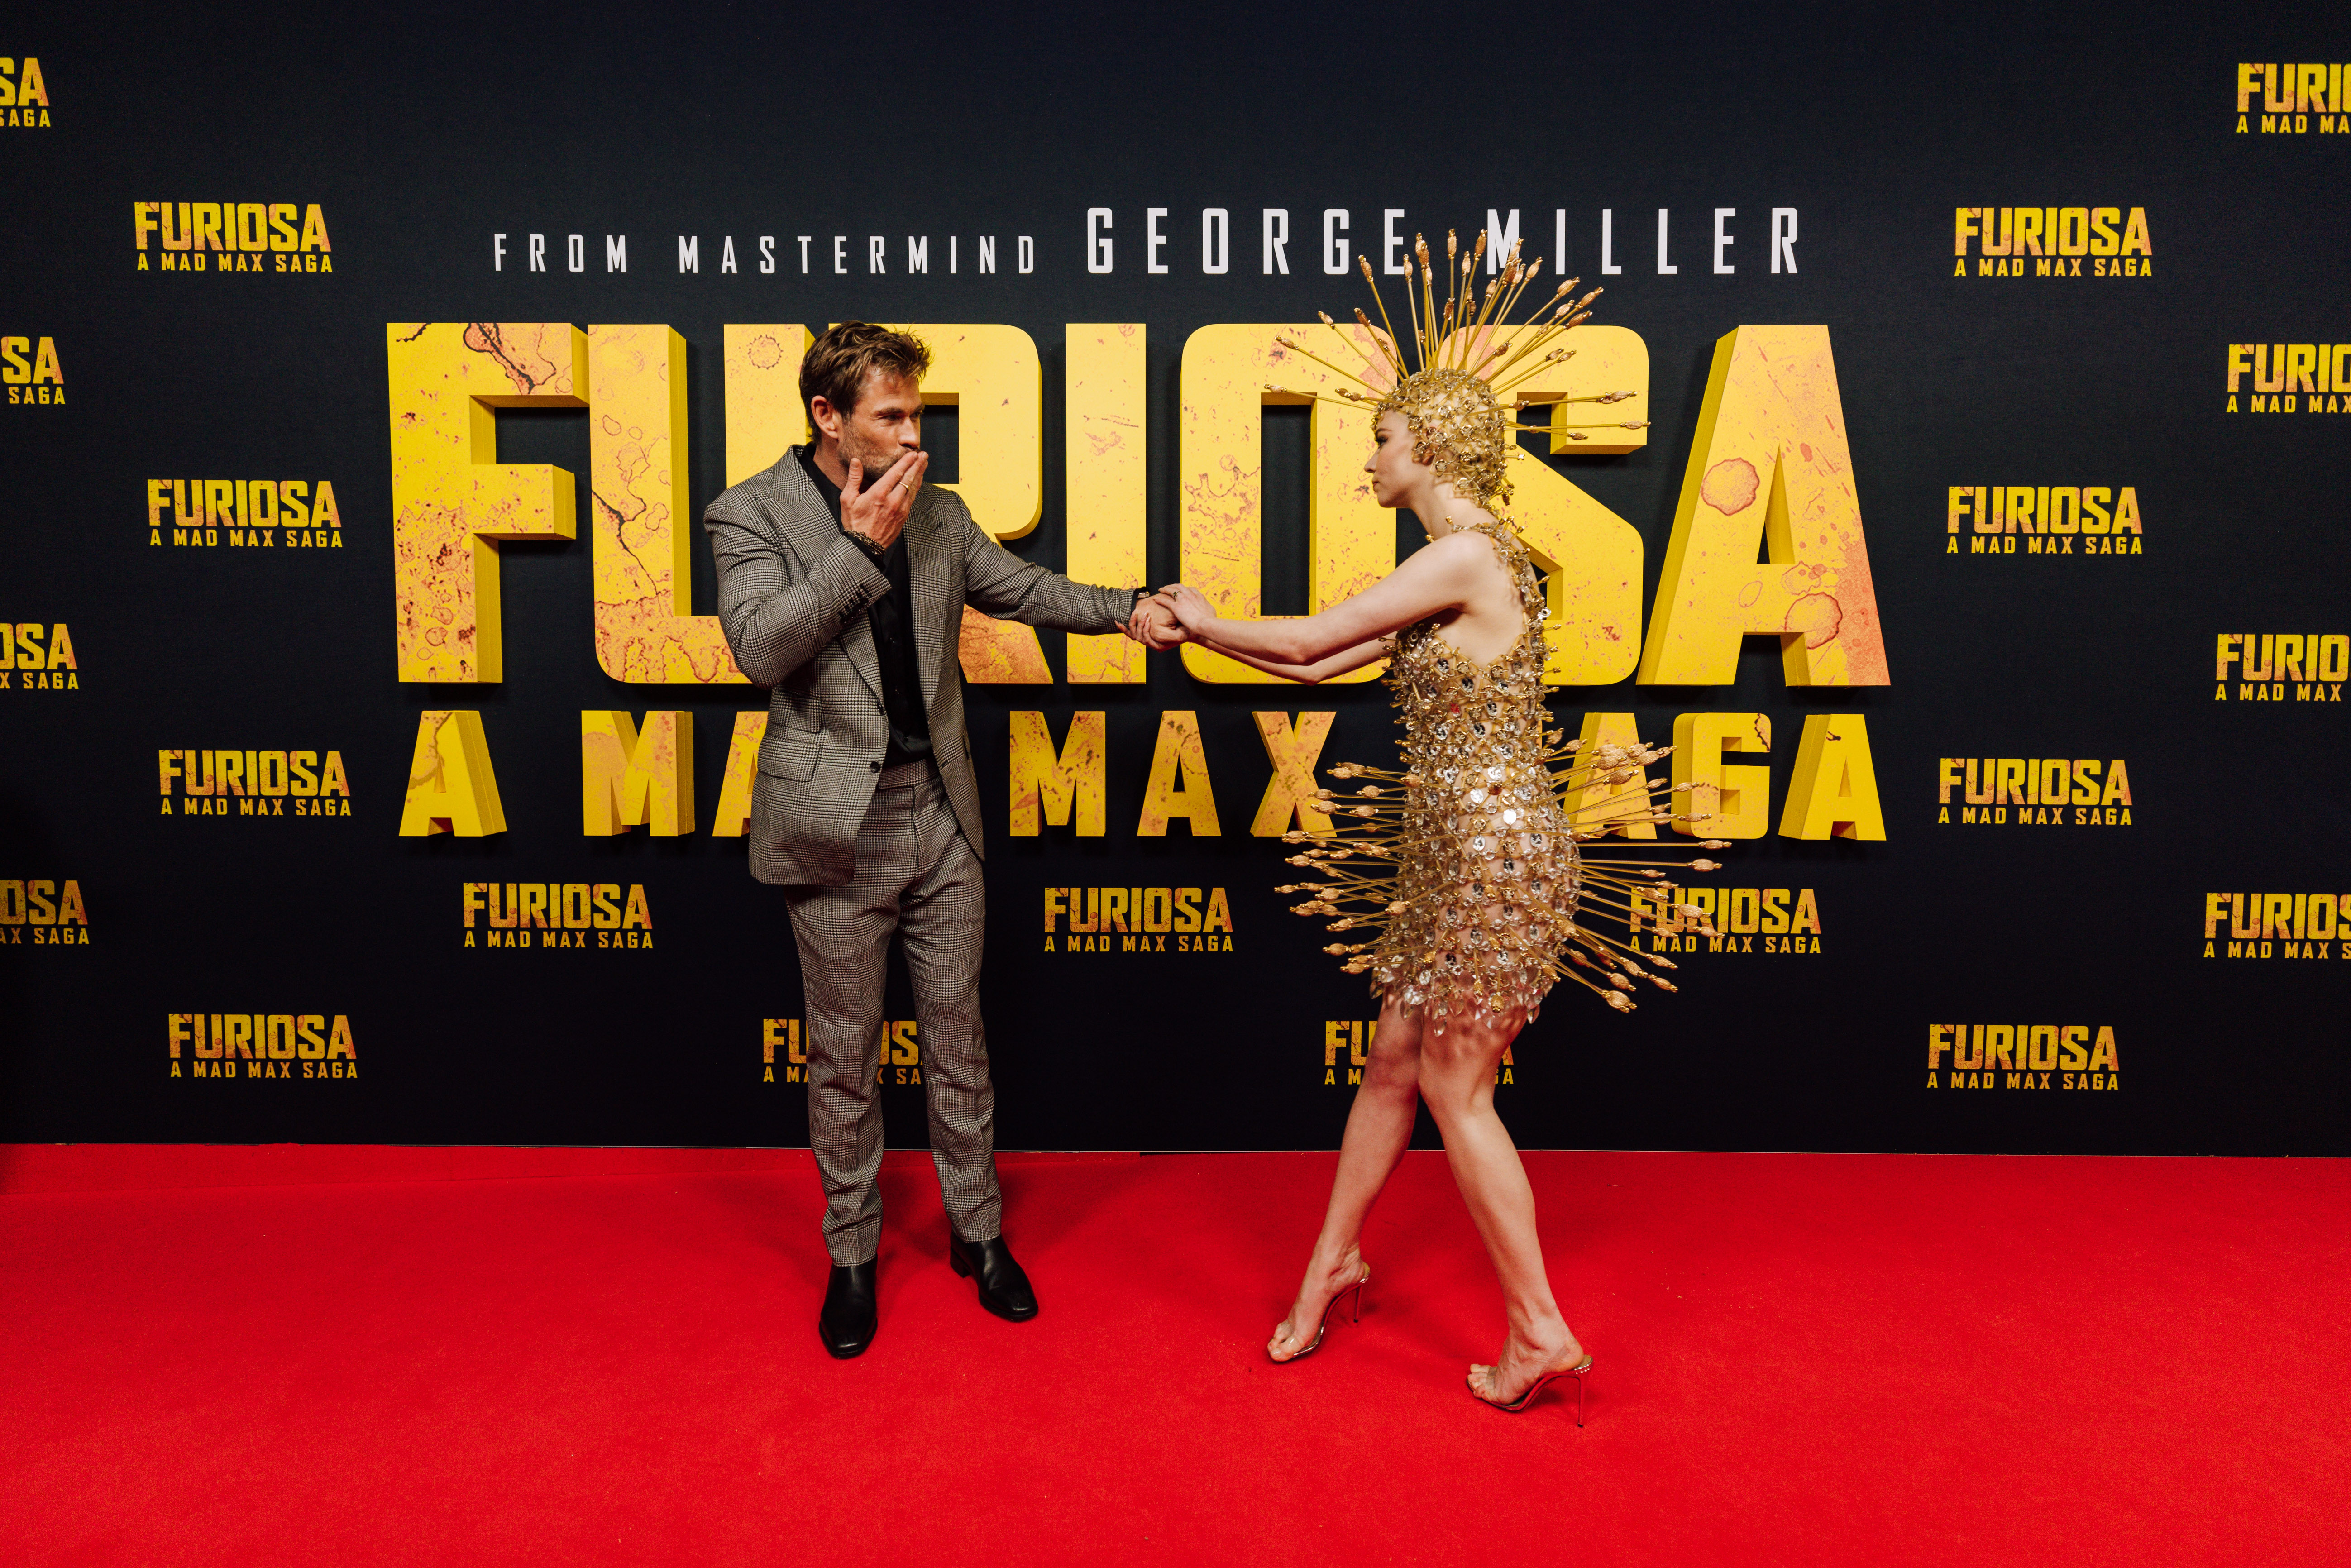 Event wrap-up: 'Furiosa: A Mad Max Saga' premiere